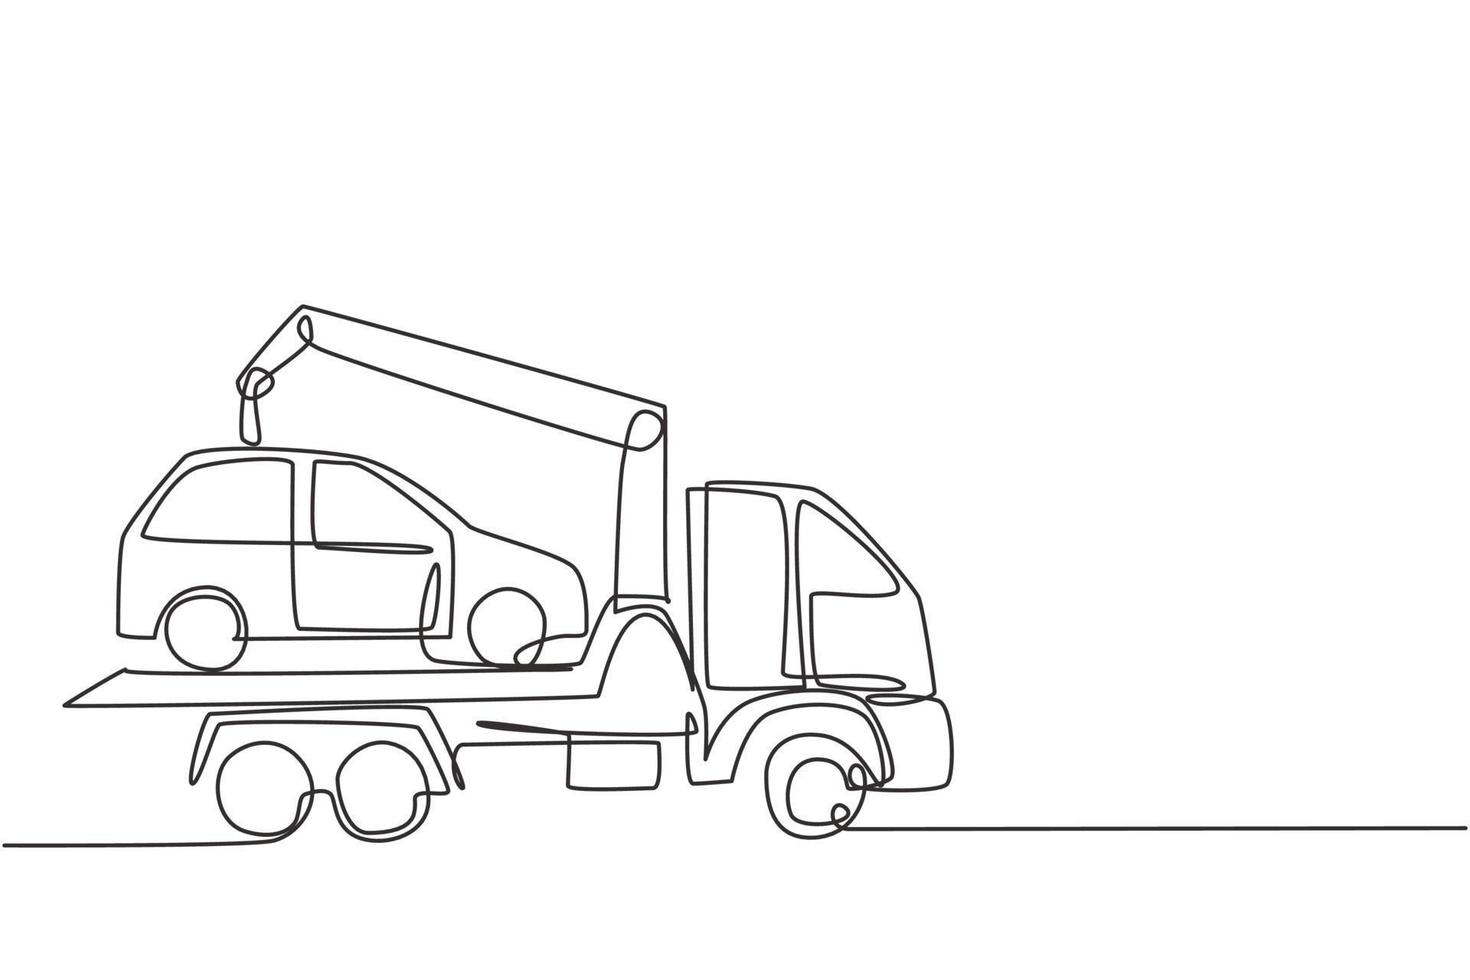 enda kontinuerlig dragning av dragbil transporterar en trasig bil ovanpå den med en kran. bilen tas till garaget för service. dynamisk en linje rita grafisk design vektor illustration.